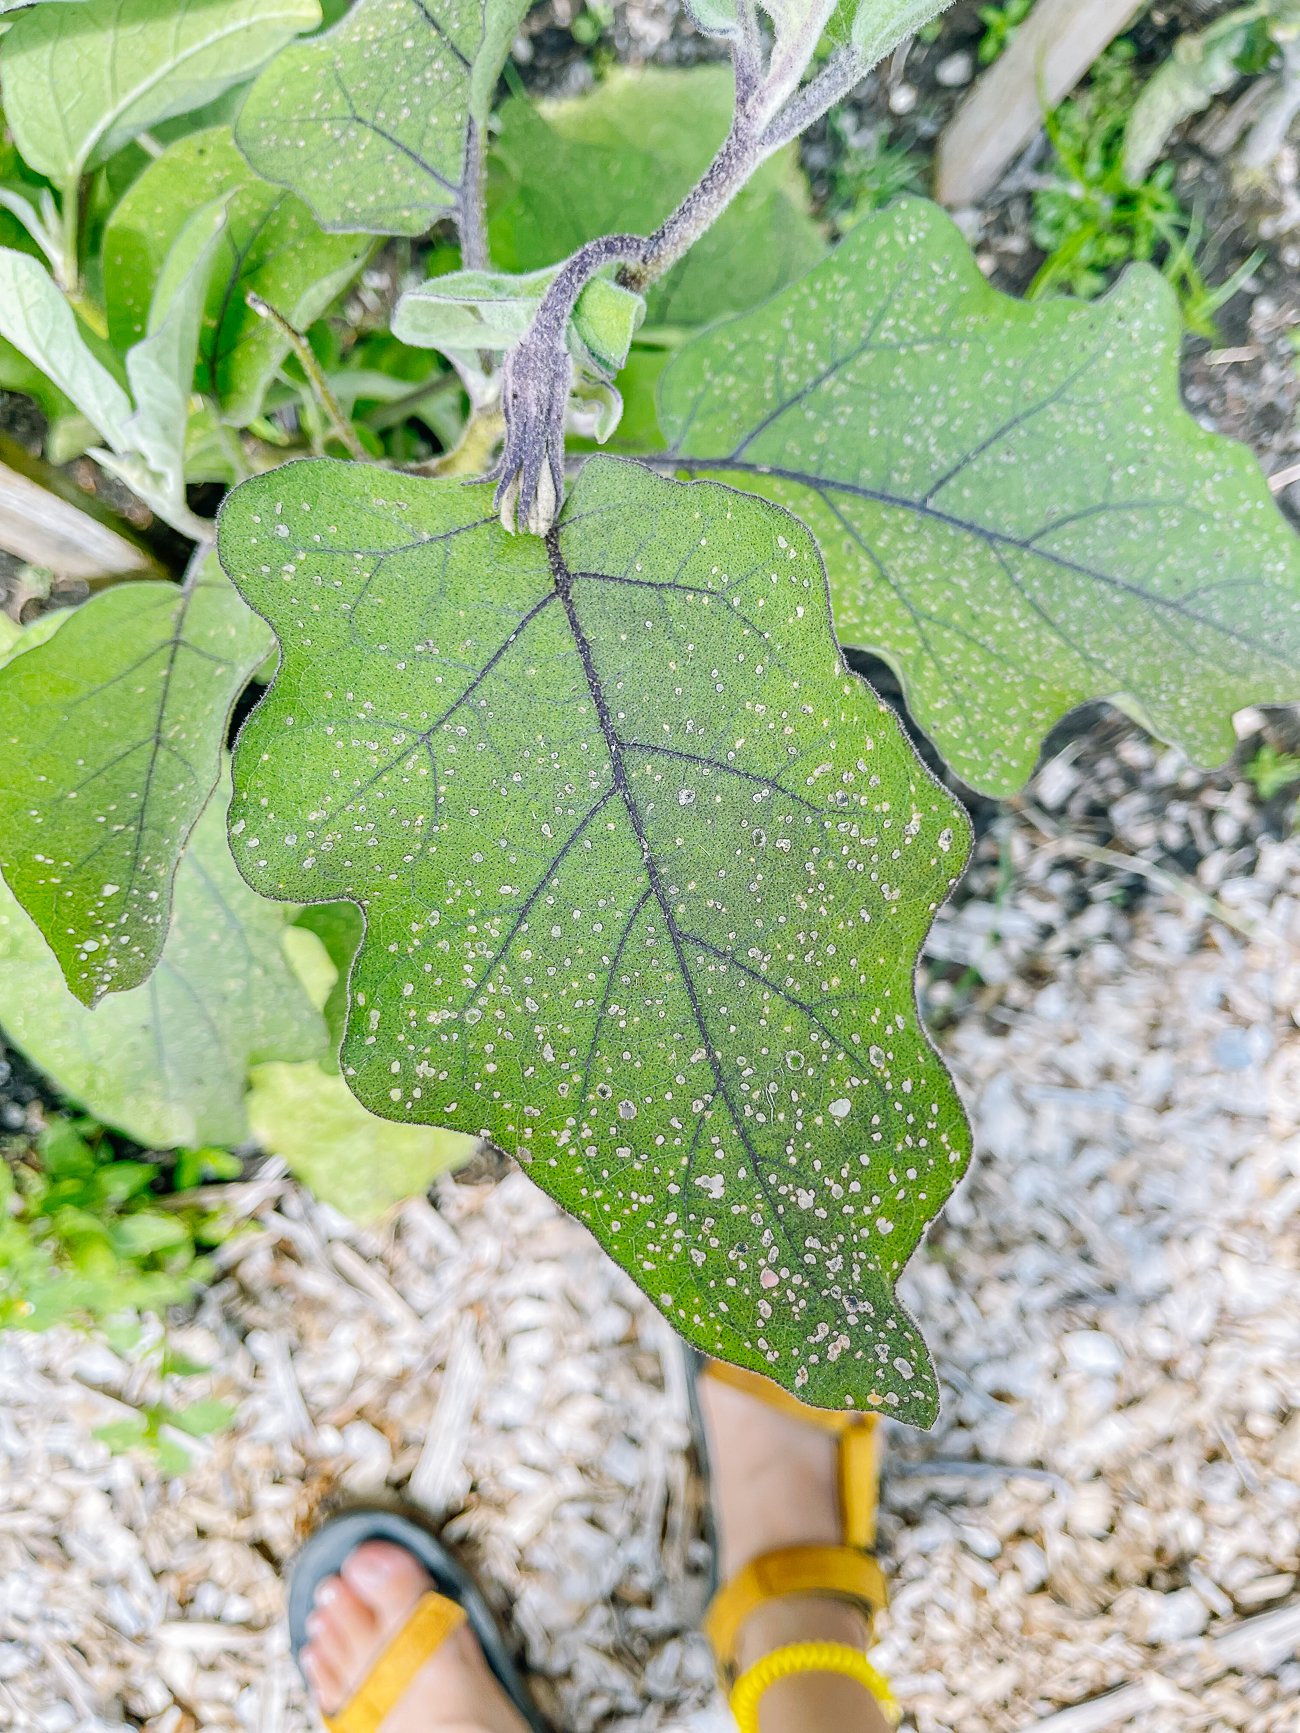 flea beetle damage on eggplant leaf